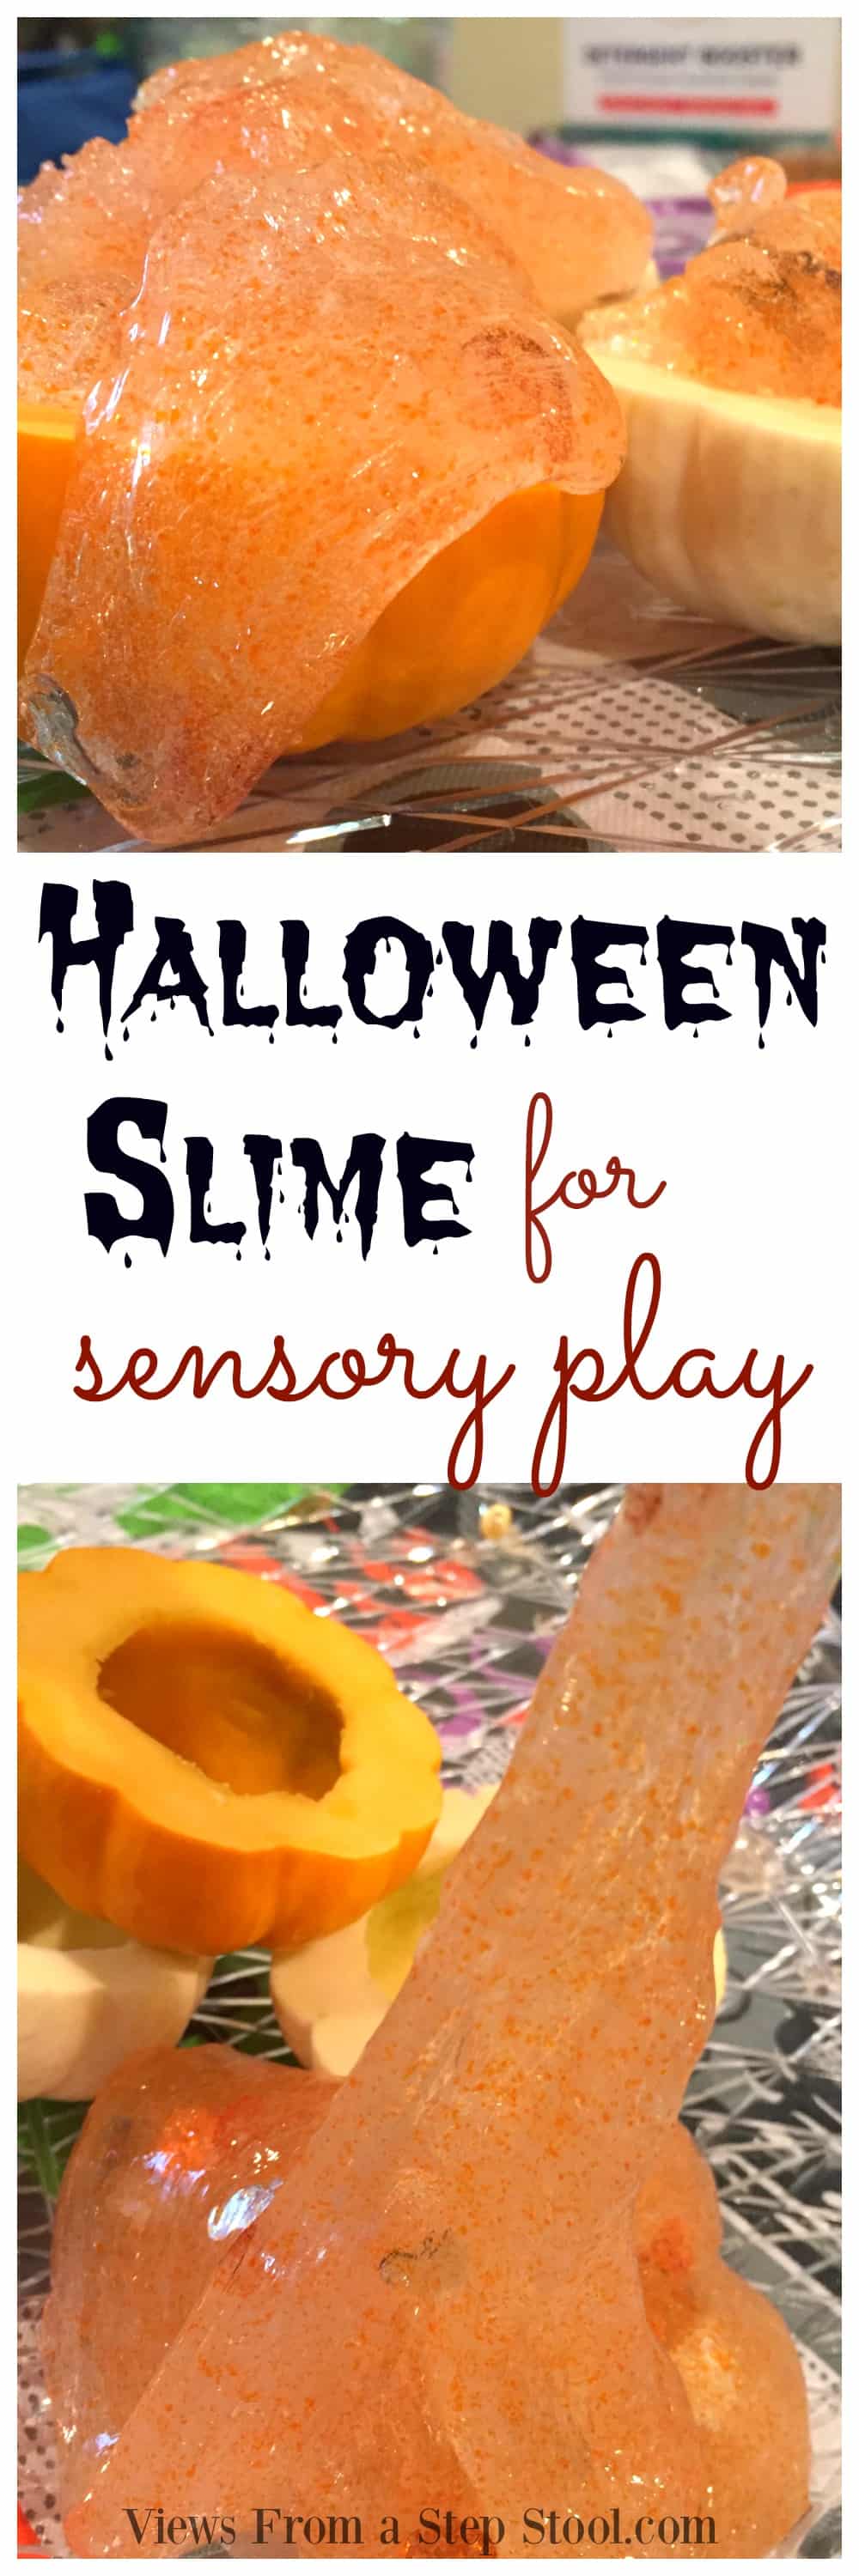 Halloween Slime for Sensory Play